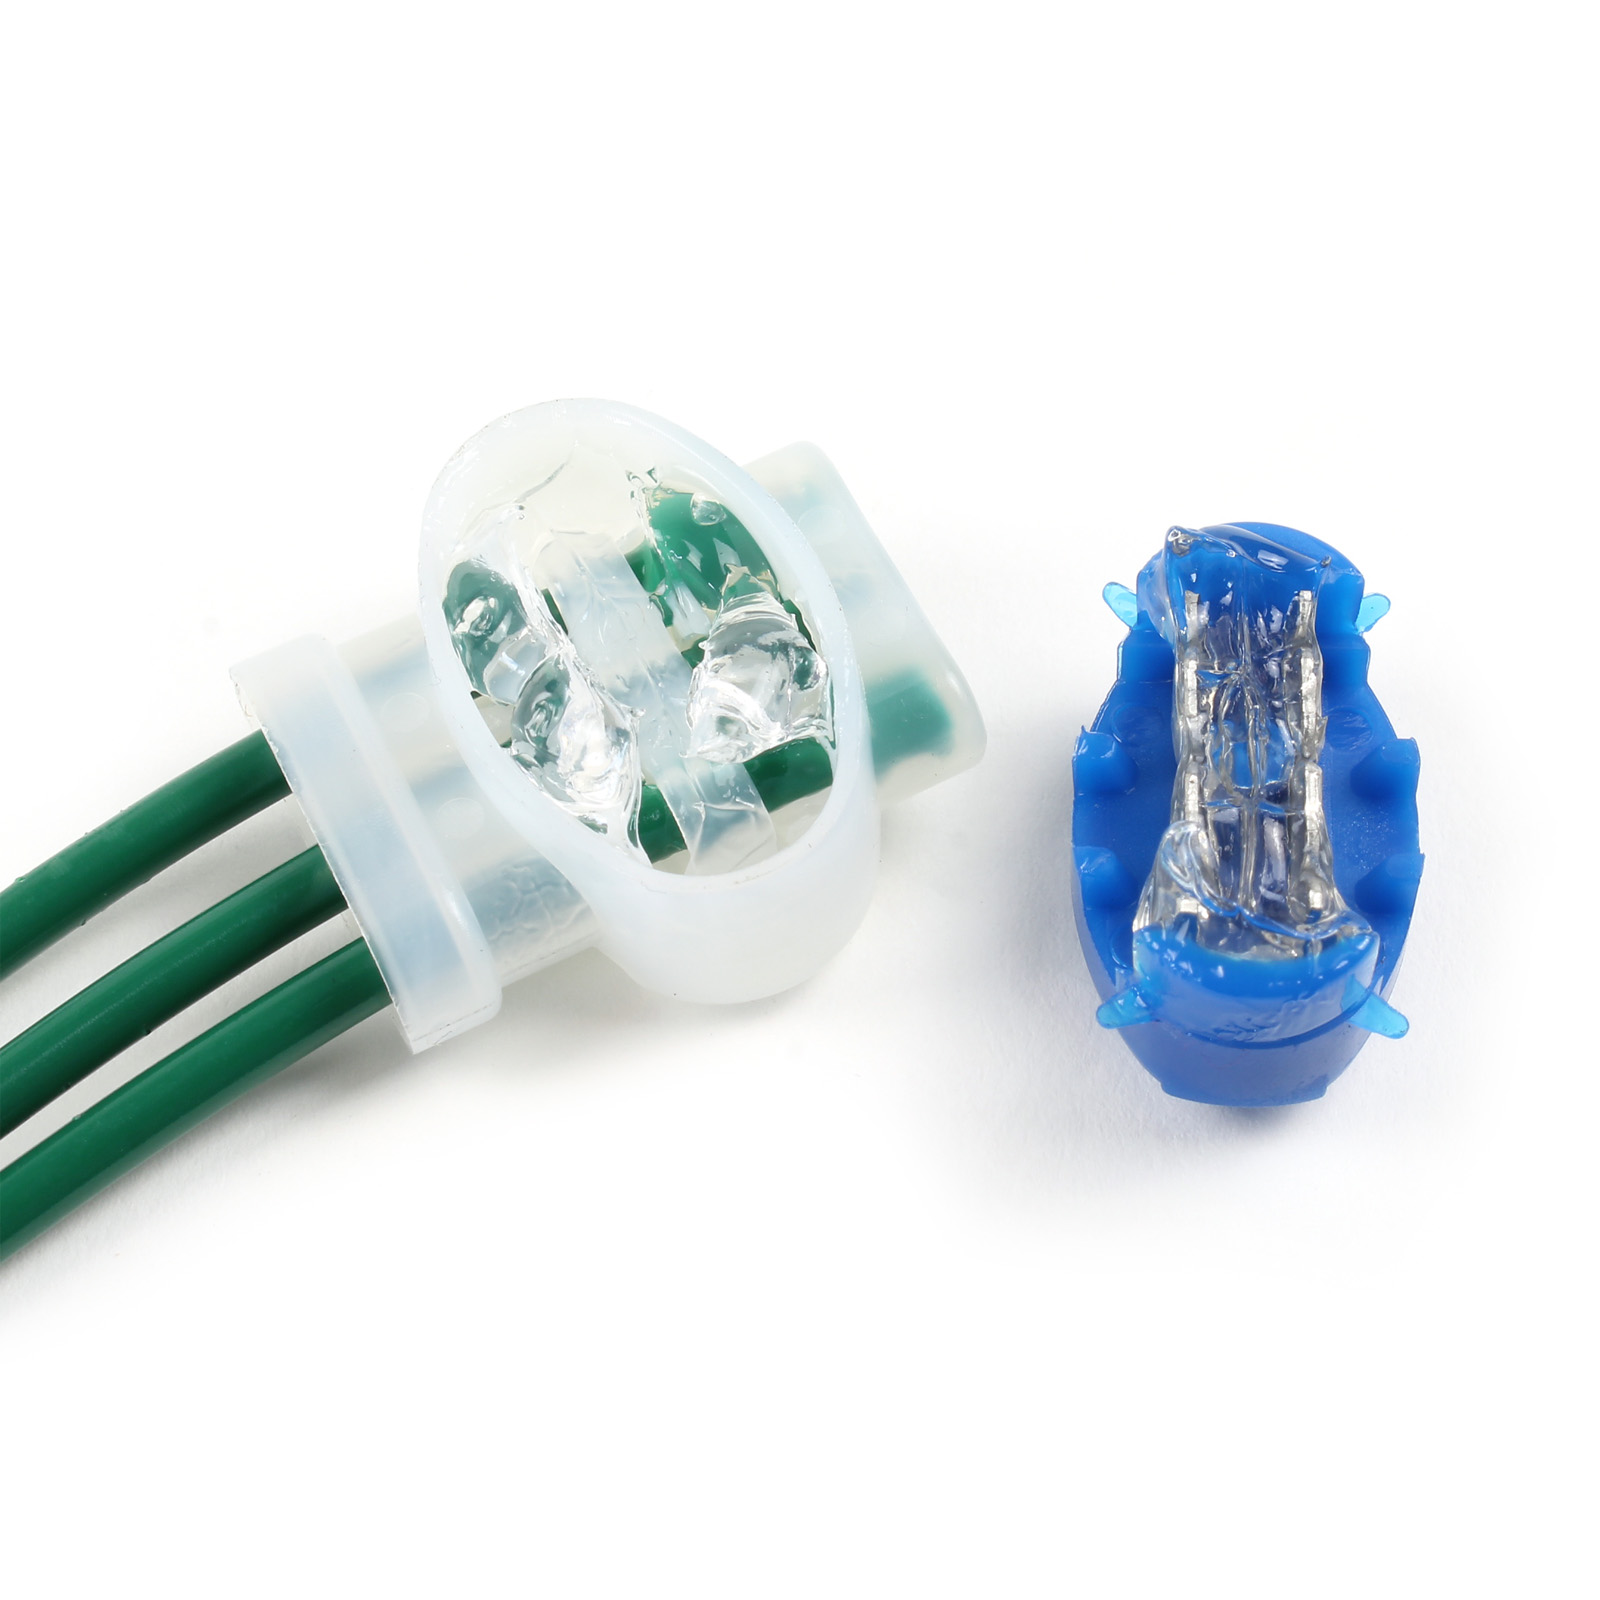 20 Pieces connecteurs de câble robot tondeuse, connecteur electrique  etanche pour Étendre ou Réparer cable peripherique robot tondeuse